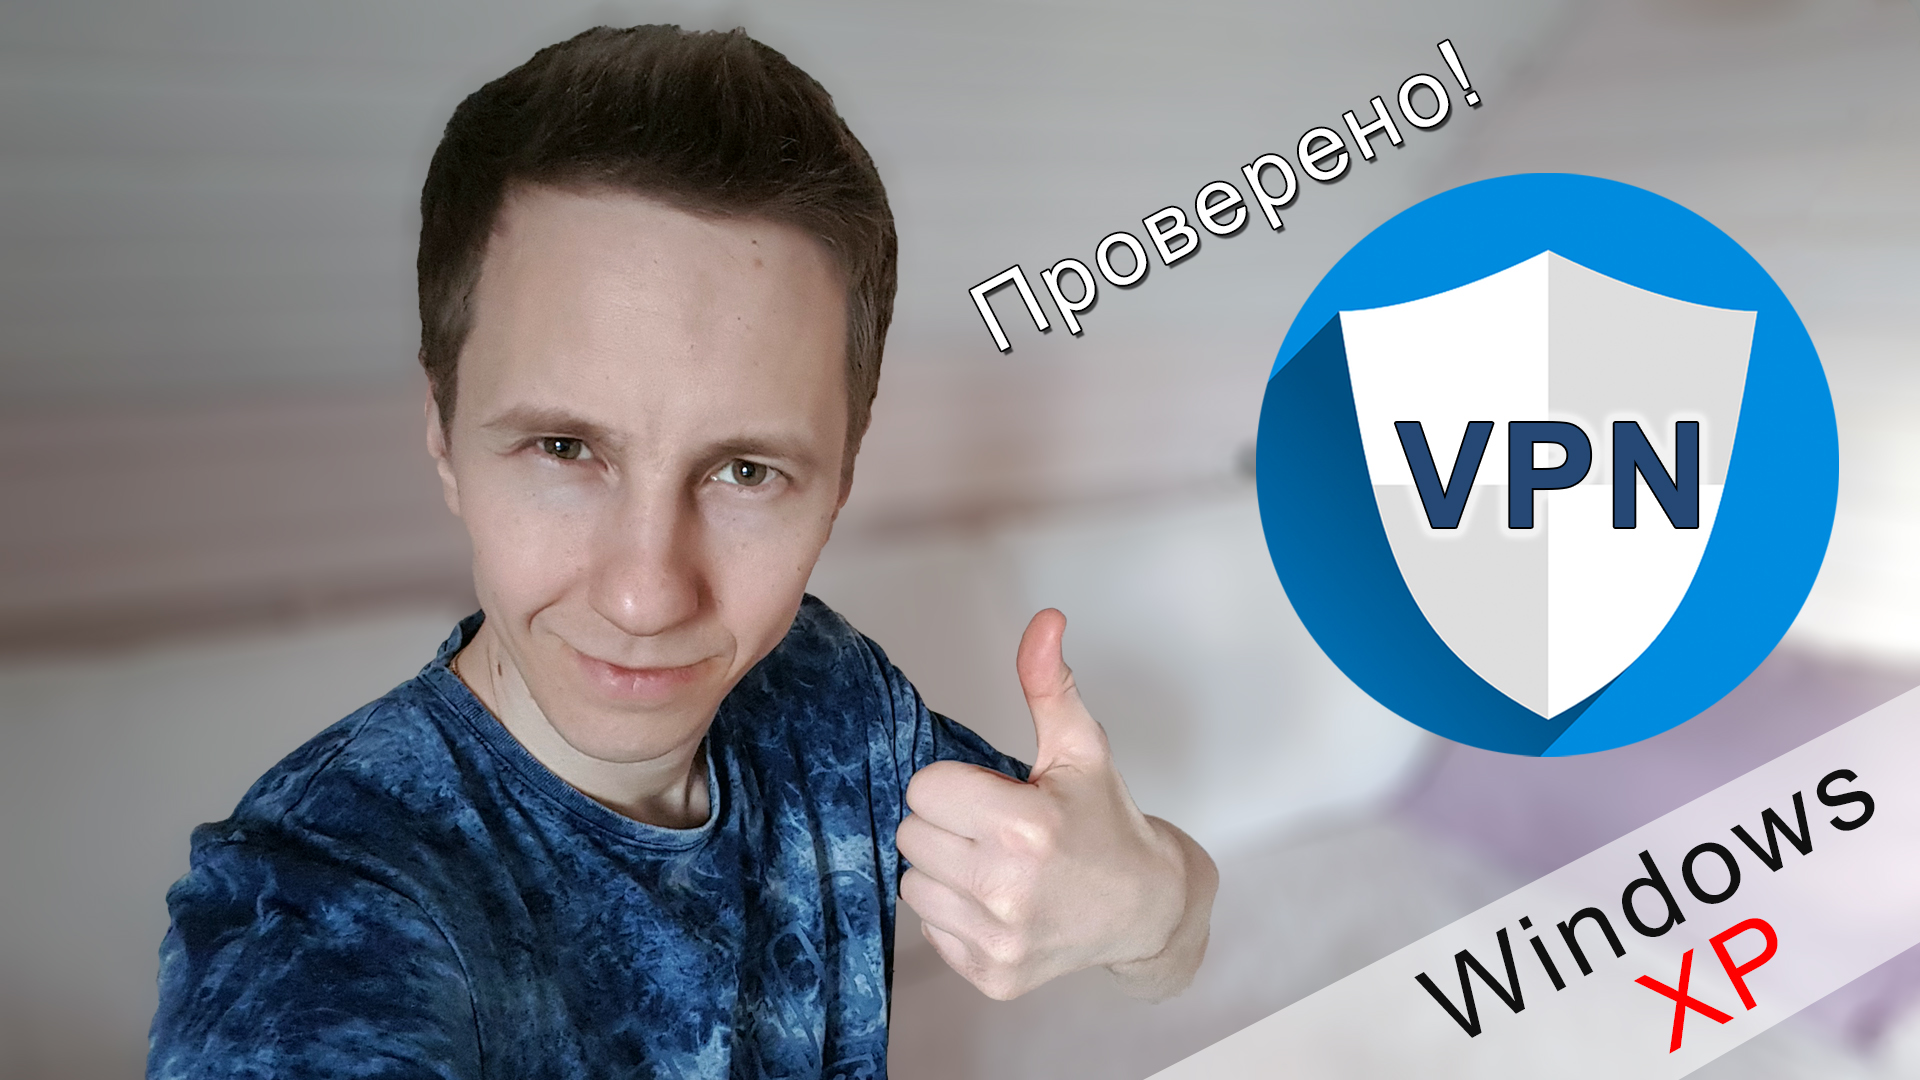 Владимир Белев держит палец вверх. Текст Windows XP и значок VPN.